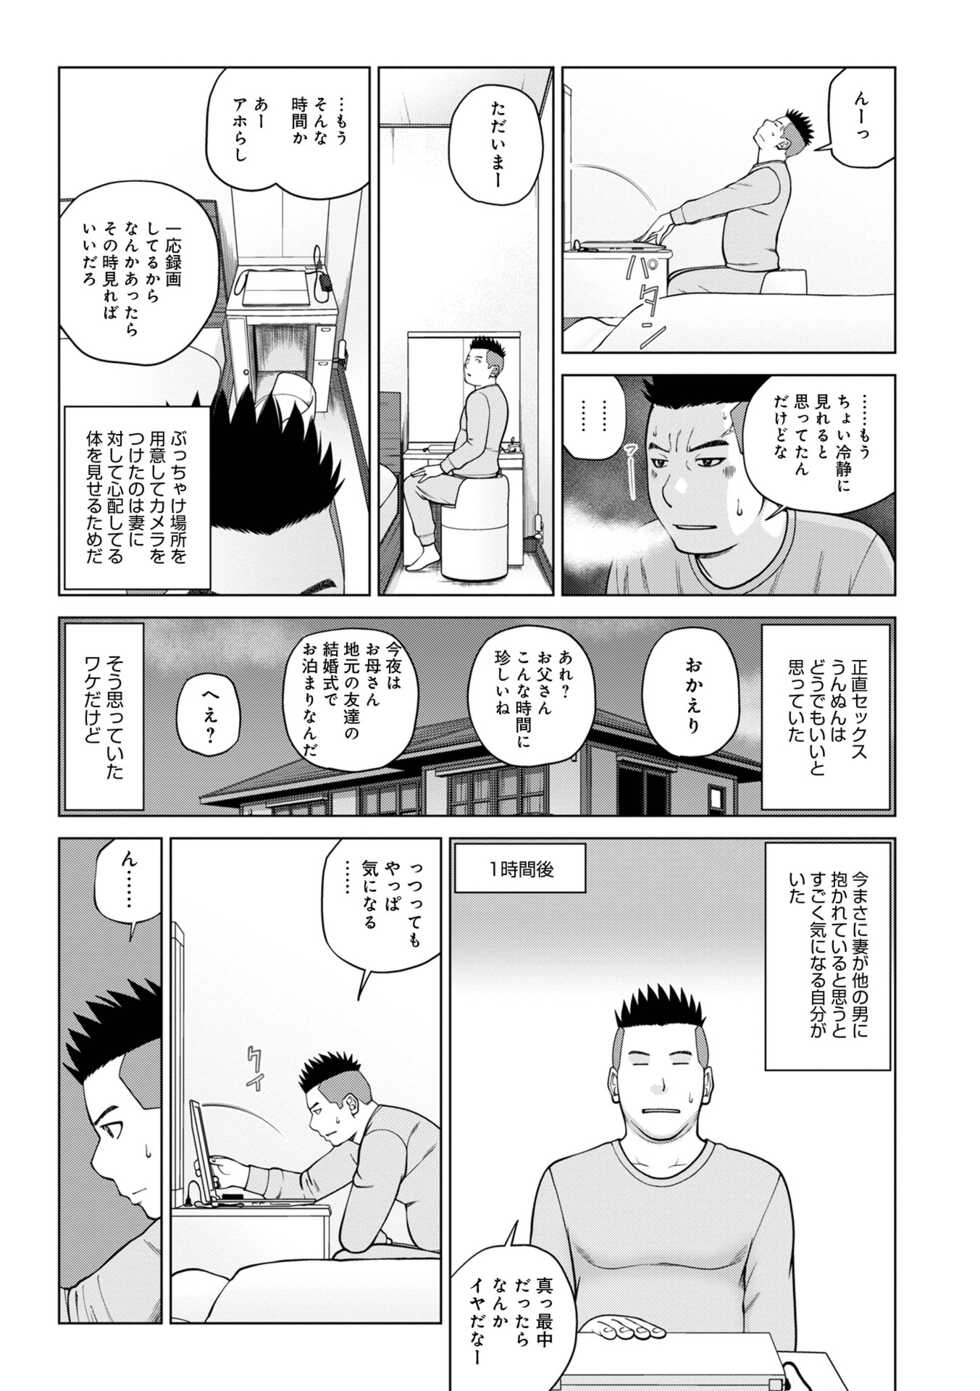 [Anthology] WEB Ban COMIC Gekiyaba! Vol. 155 - Page 9